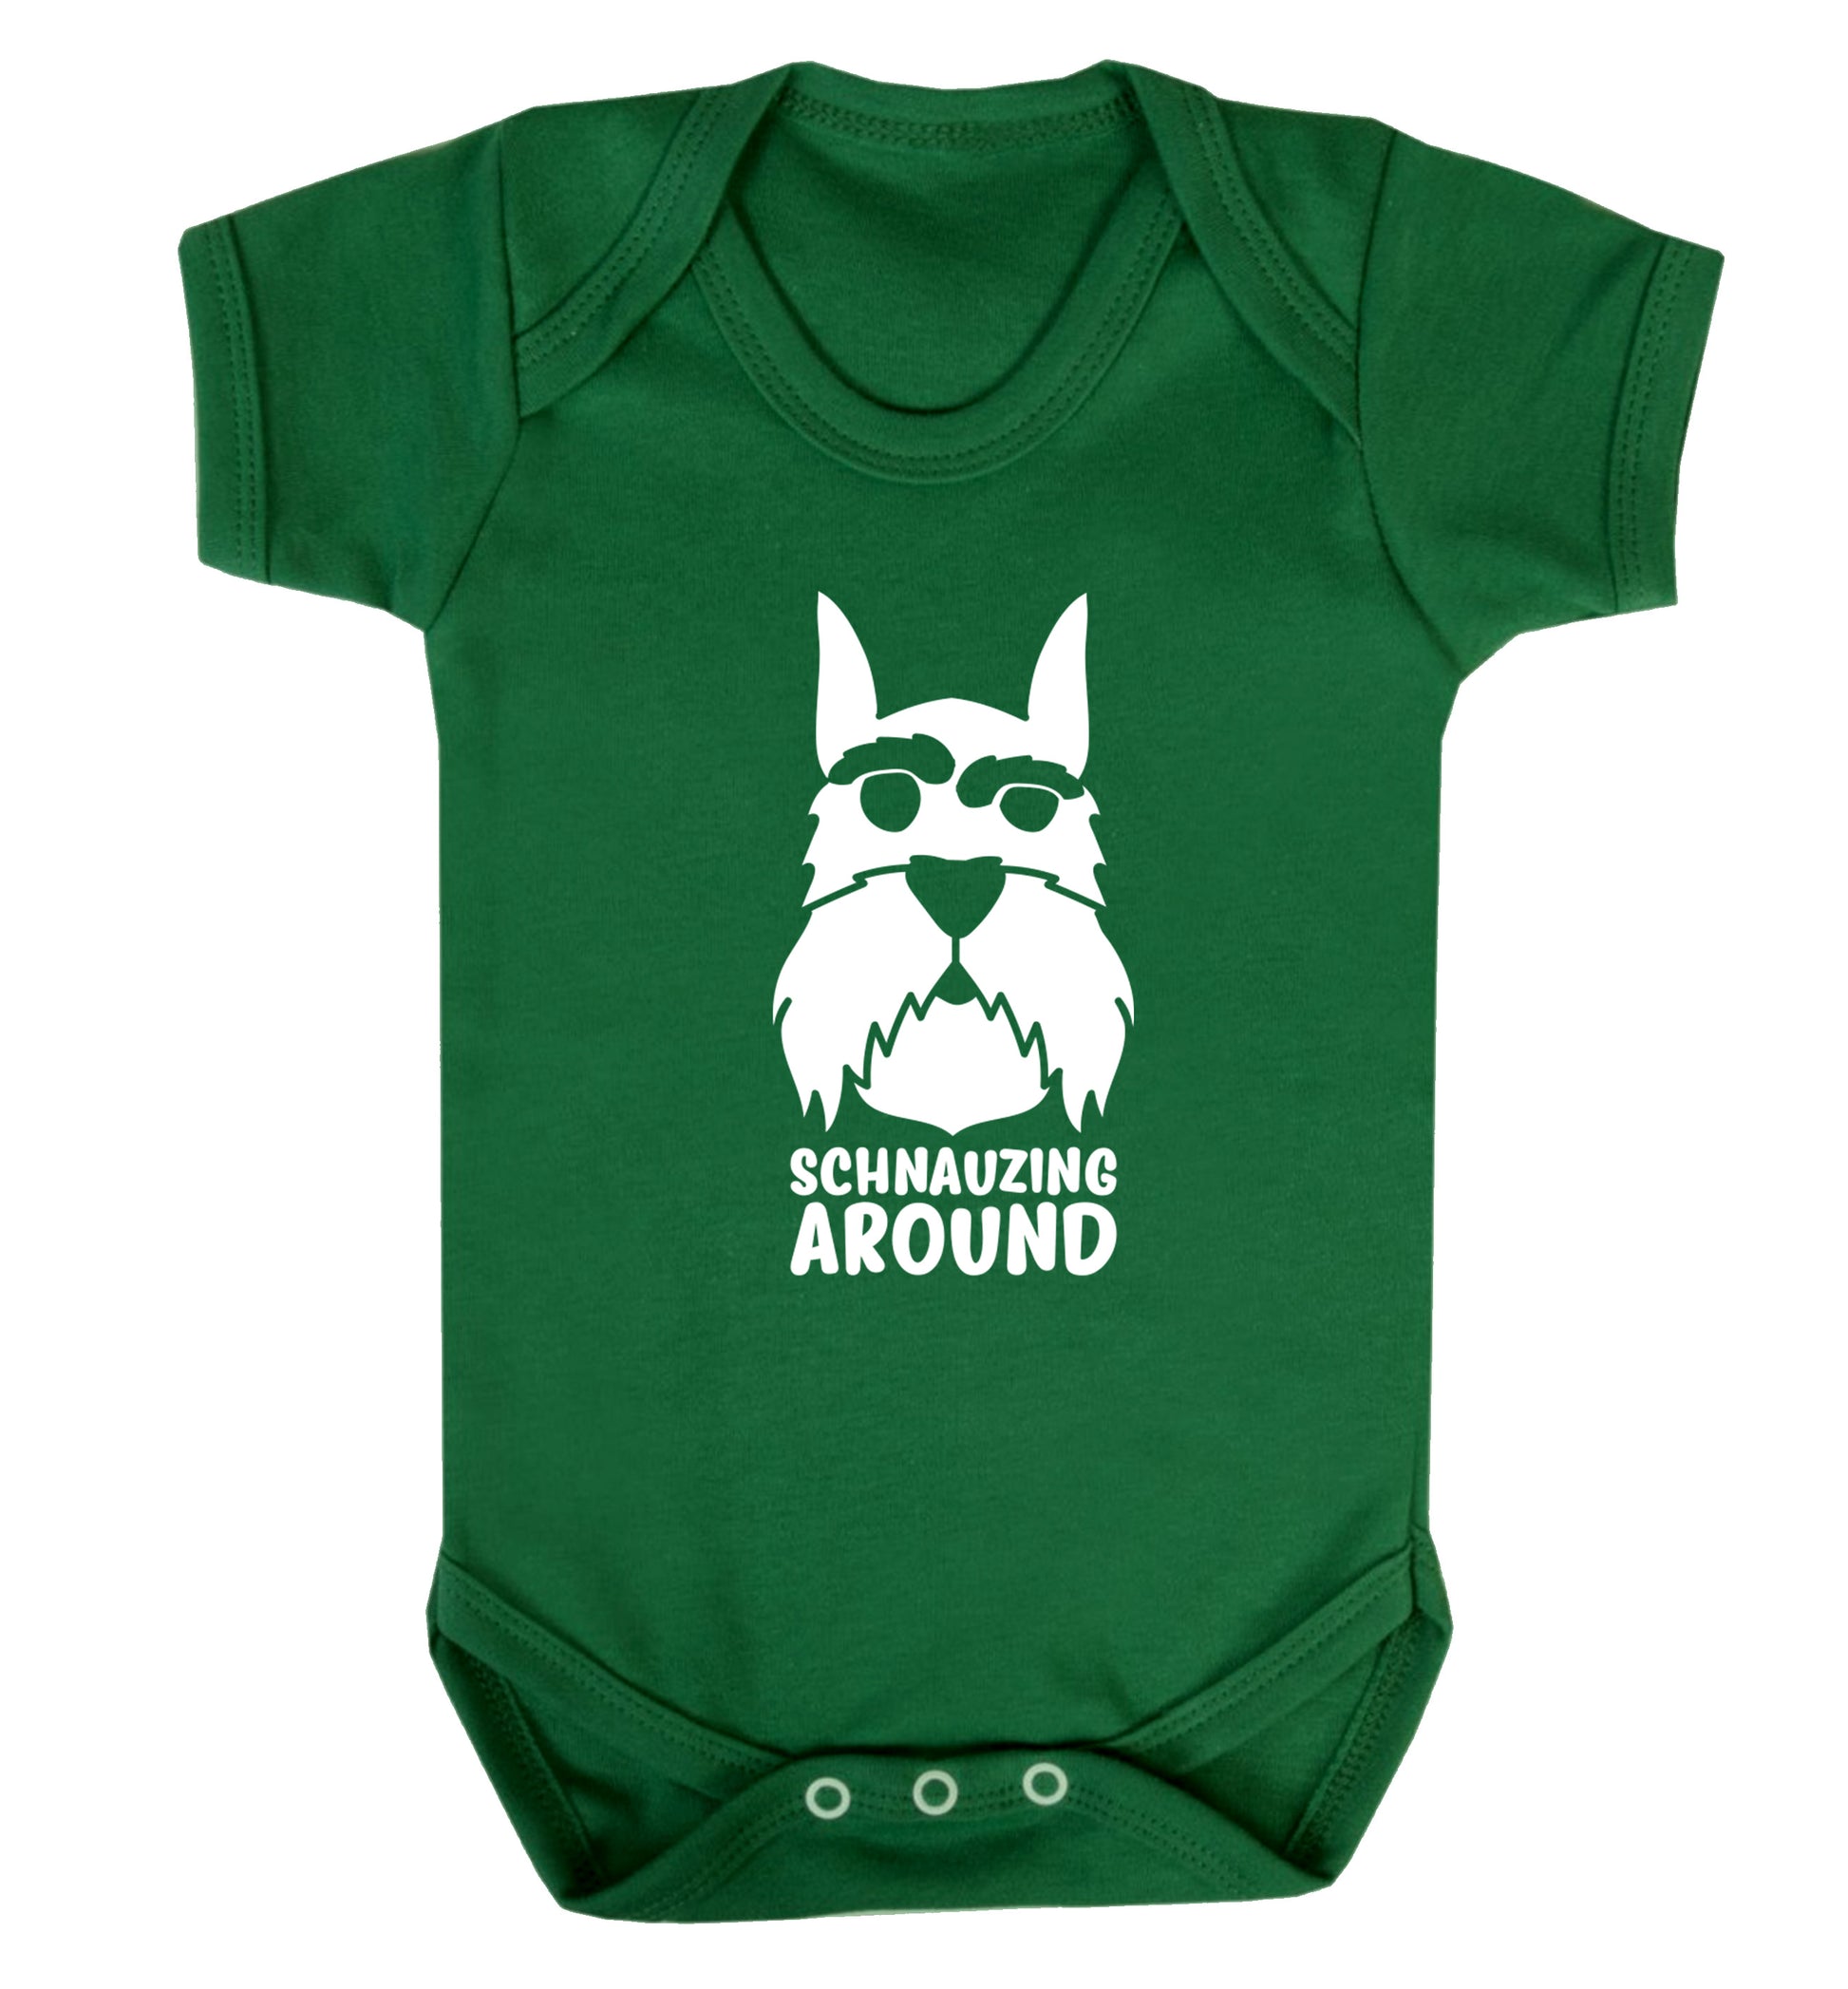 Schnauzing Around Baby Vest green 18-24 months